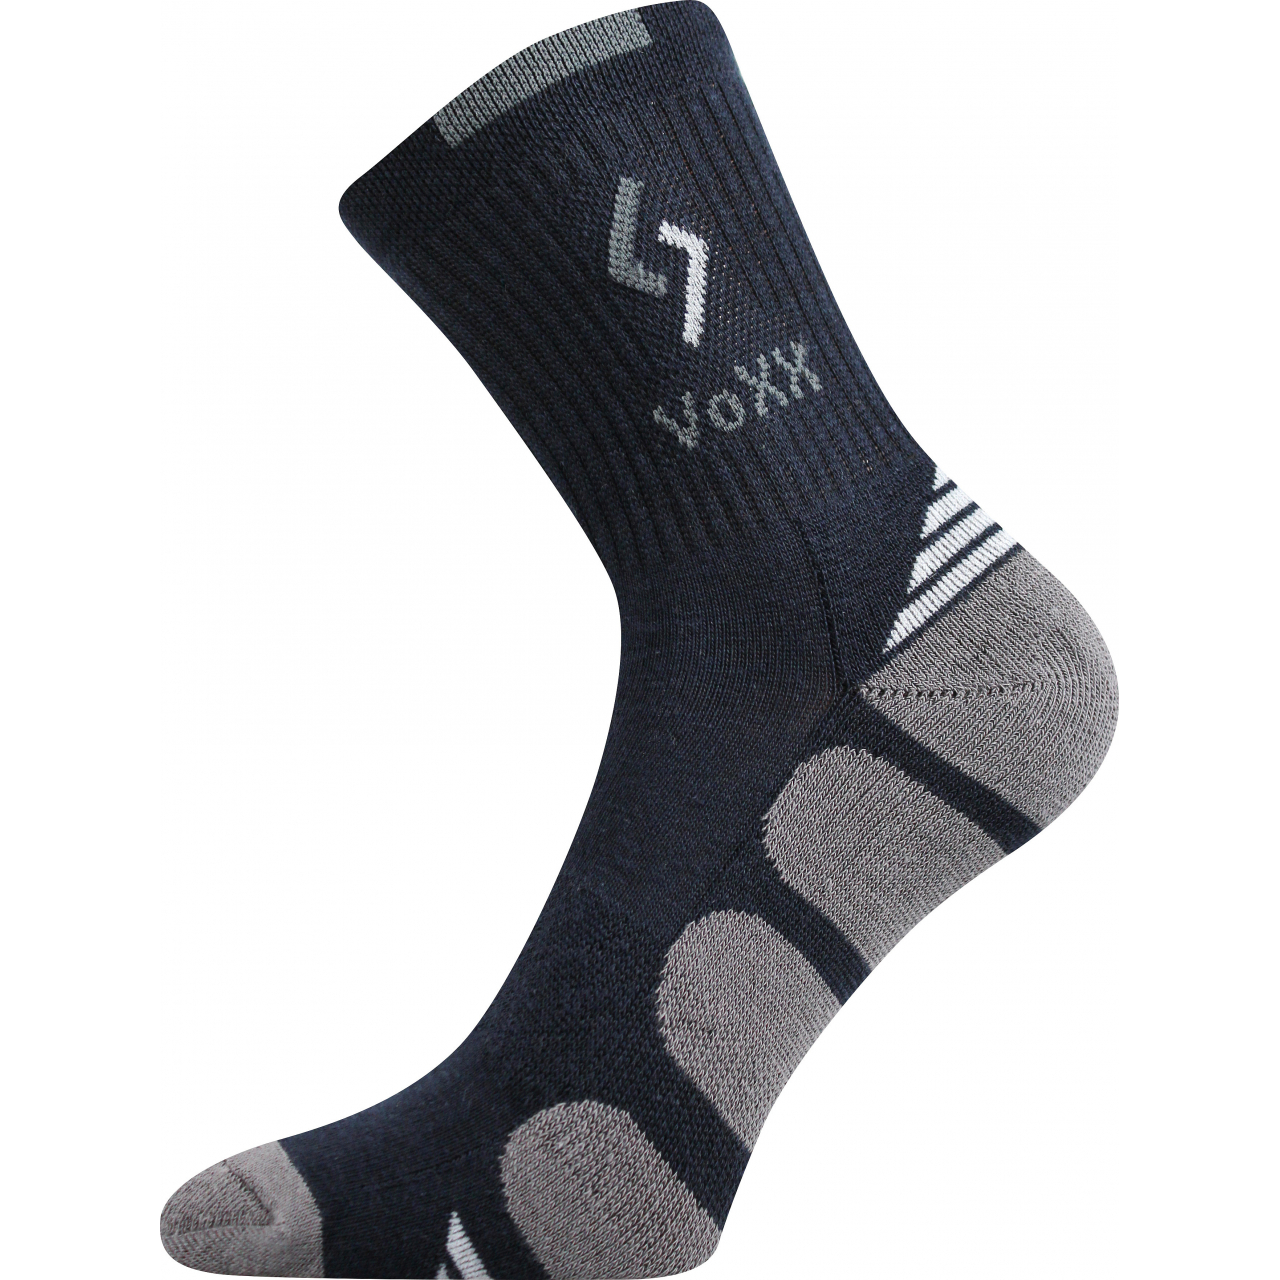 Ponožky sportovní Voxx Tronic - tmavě modré-šedé, 43-46